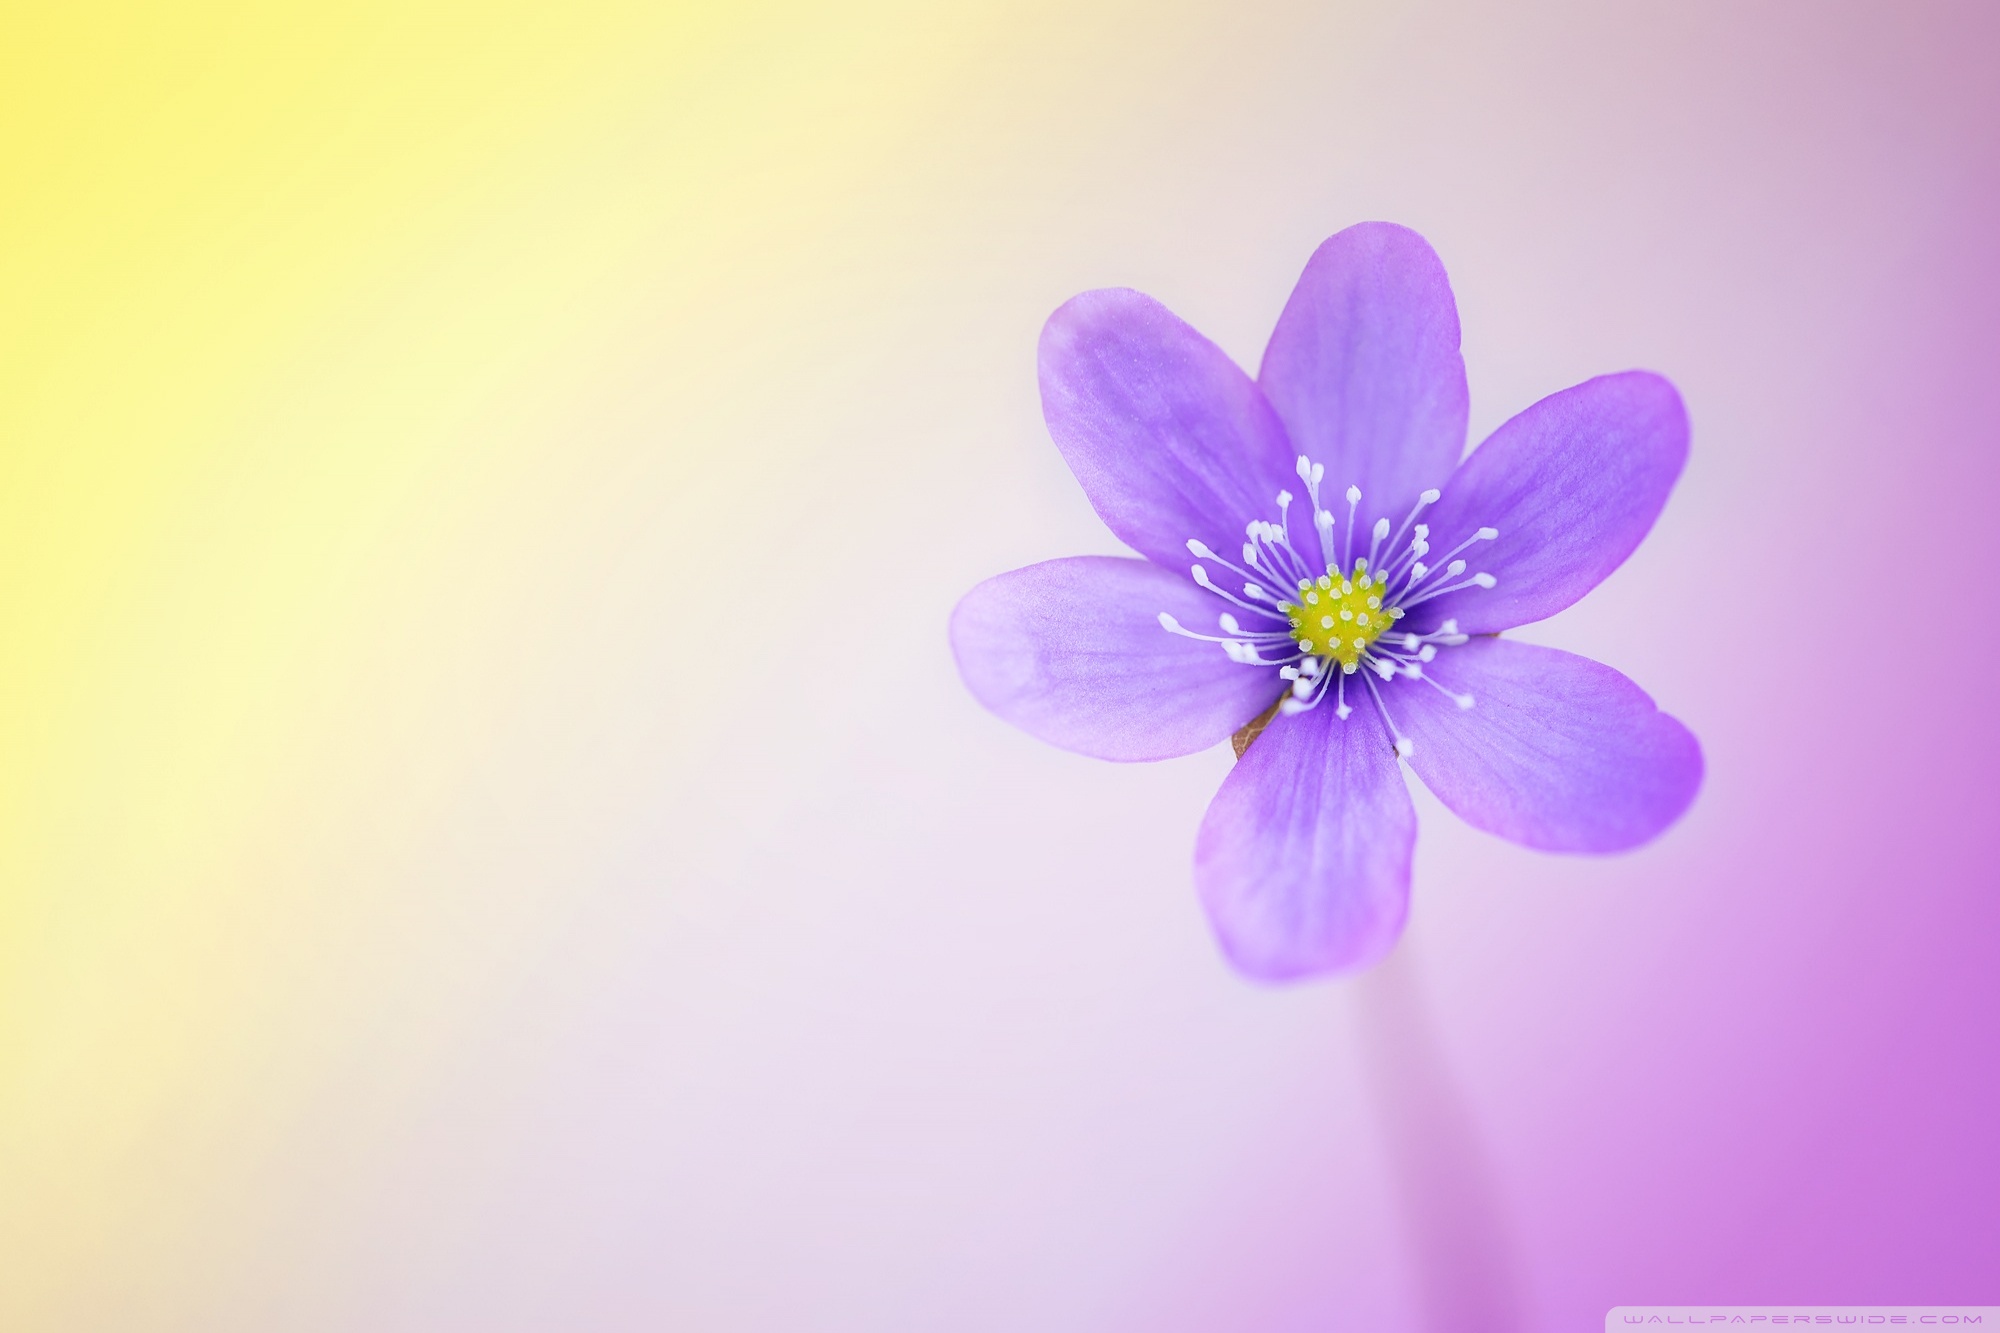 Wallpaperswide Com - Hd Cute Flower Desktop - HD Wallpaper 